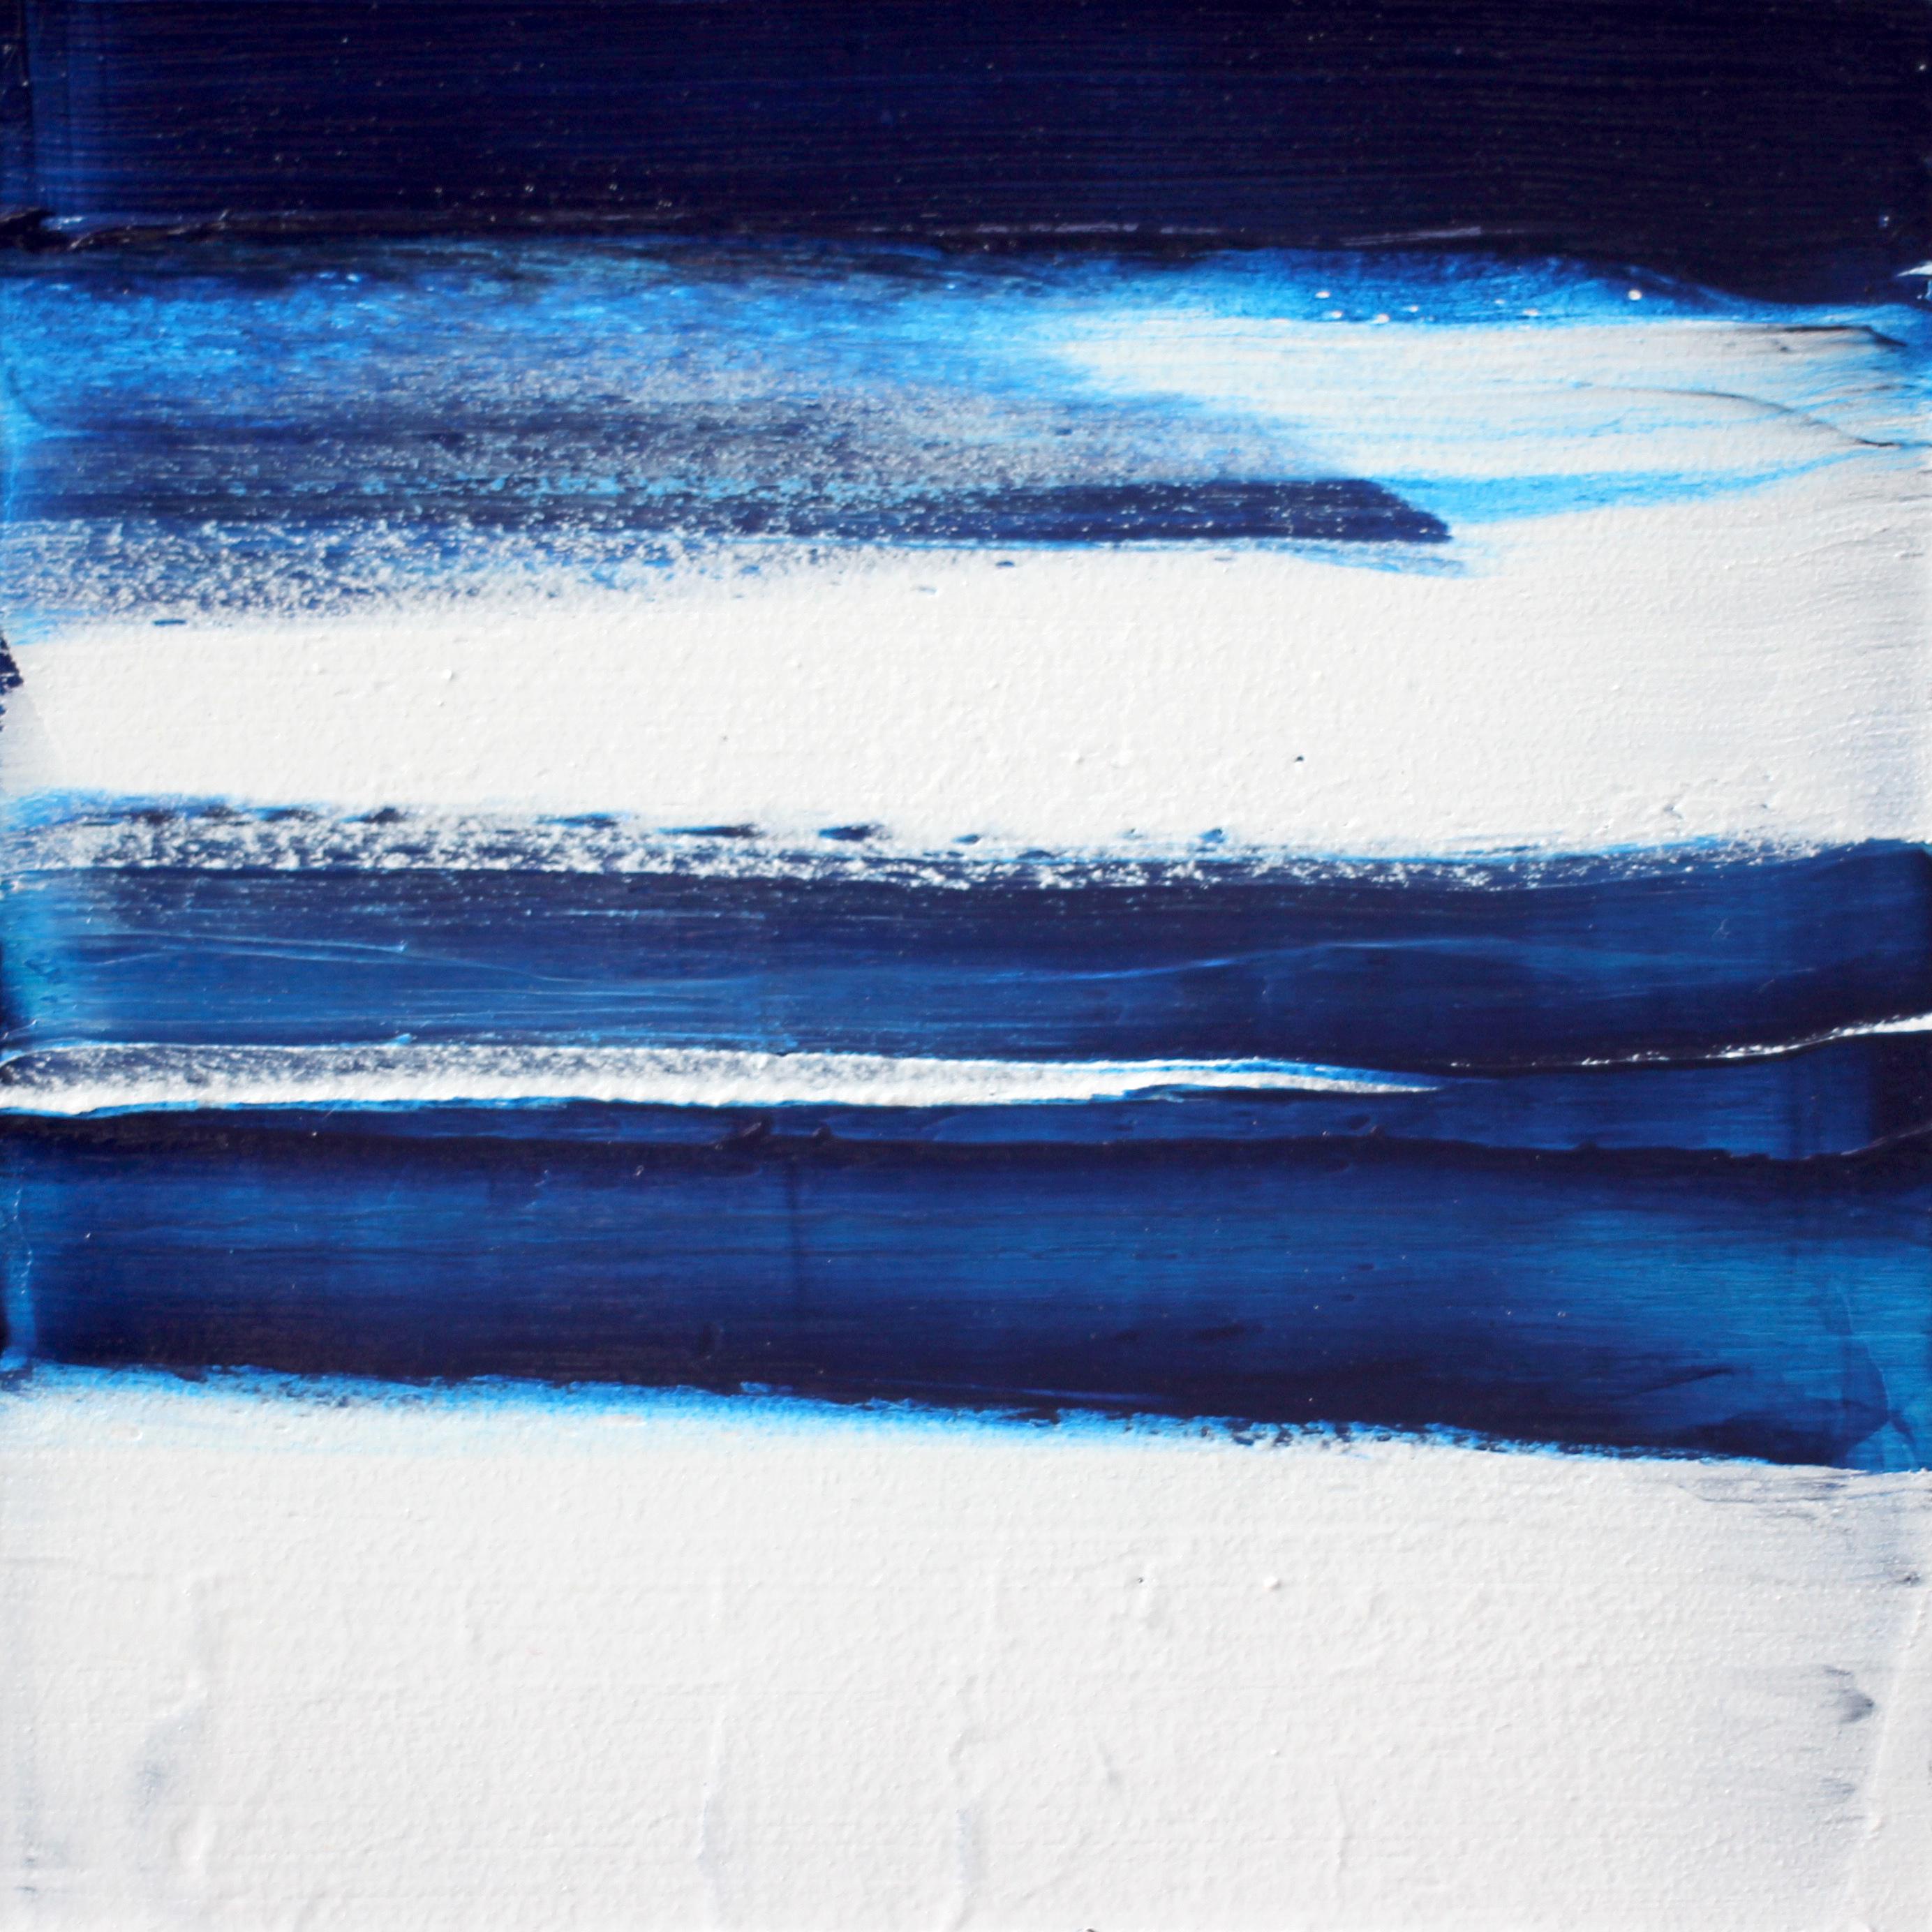 Abstract Painting Christie Owen - "Elements 3083" Composition abstraite en couches sur panneau de bouleau baltique.